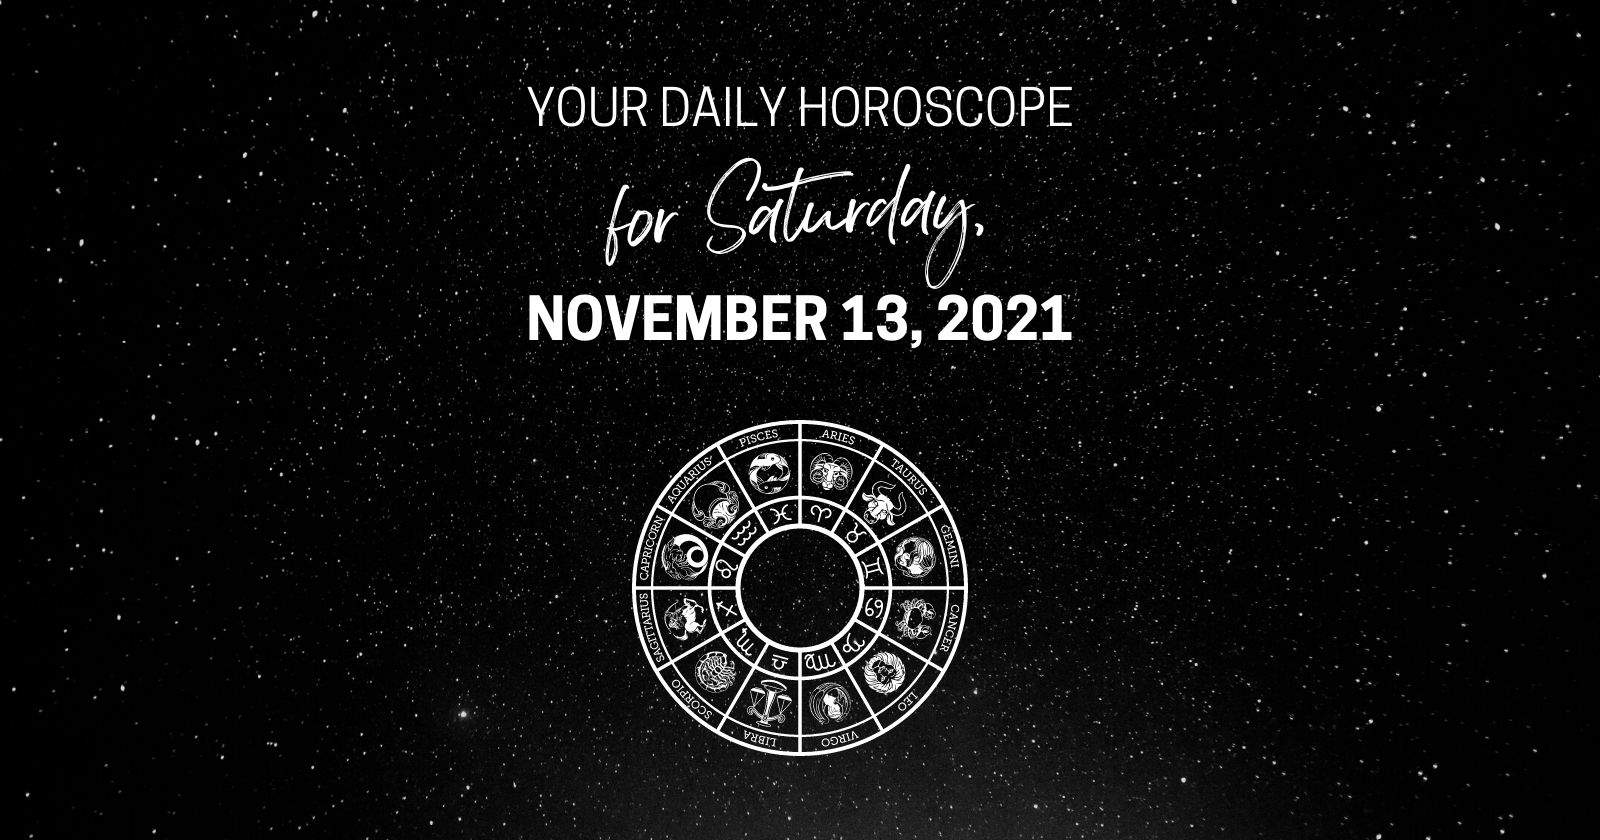 Daily Horoscope For Saturday, November 13, 2021.